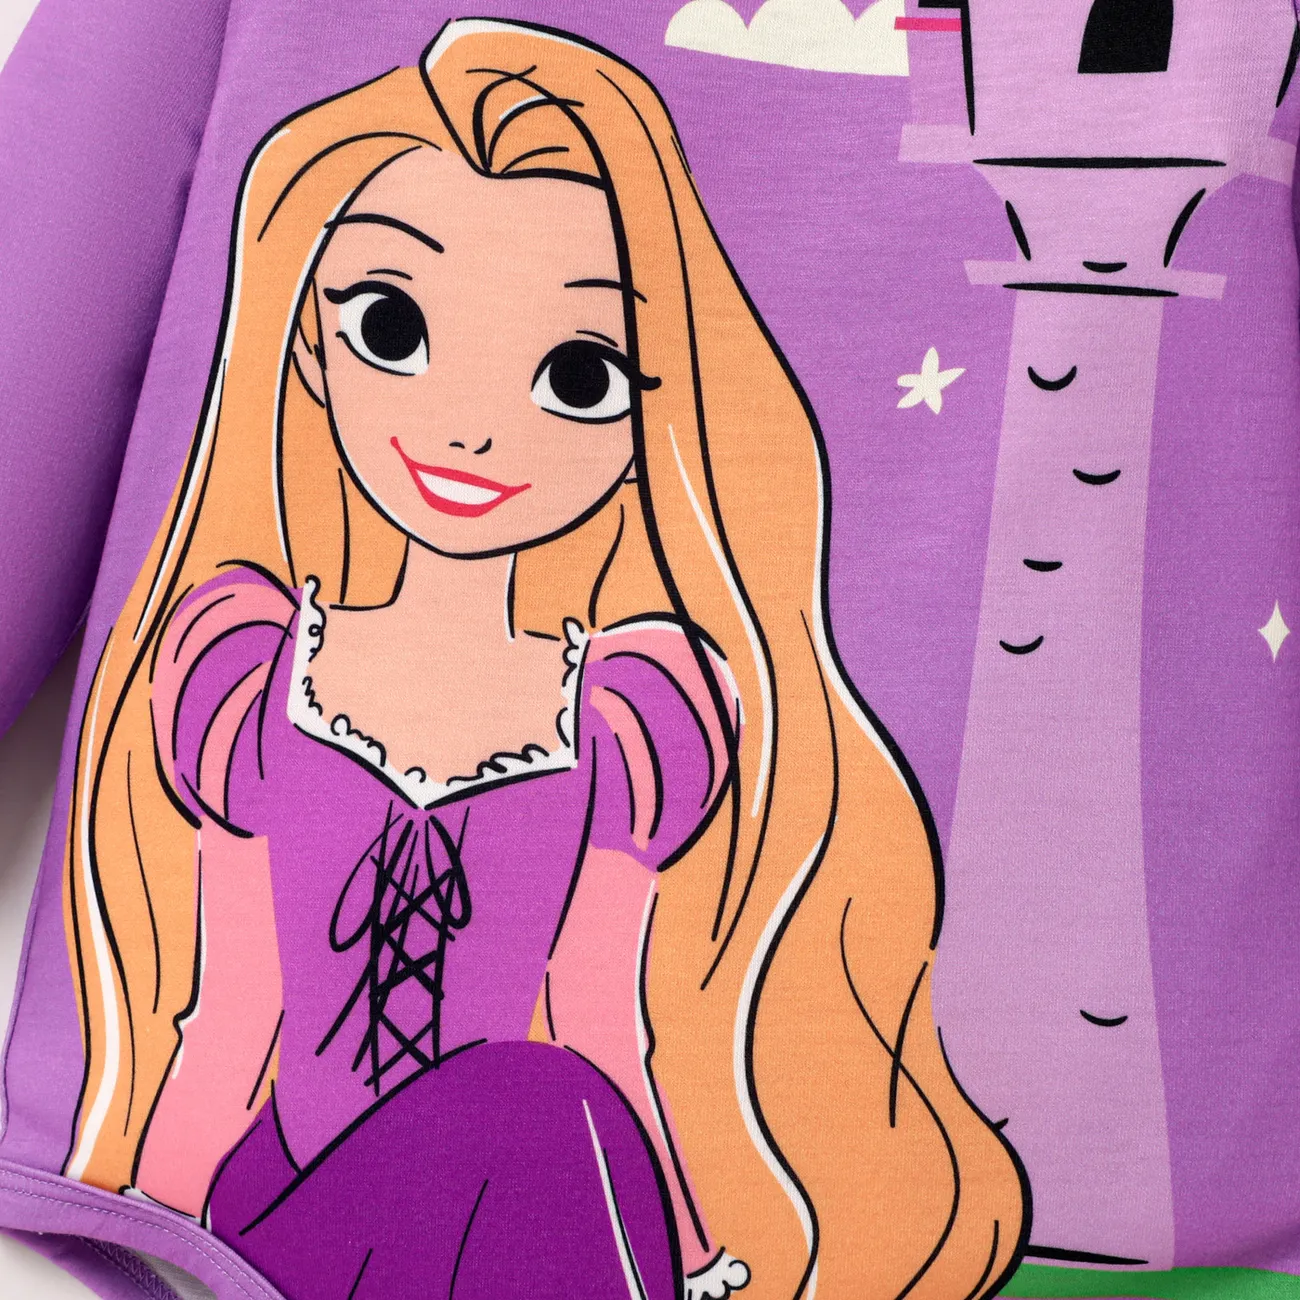 Disney Princess Bebé Menina Bonito Manga comprida Macacão curto Roxa big image 1